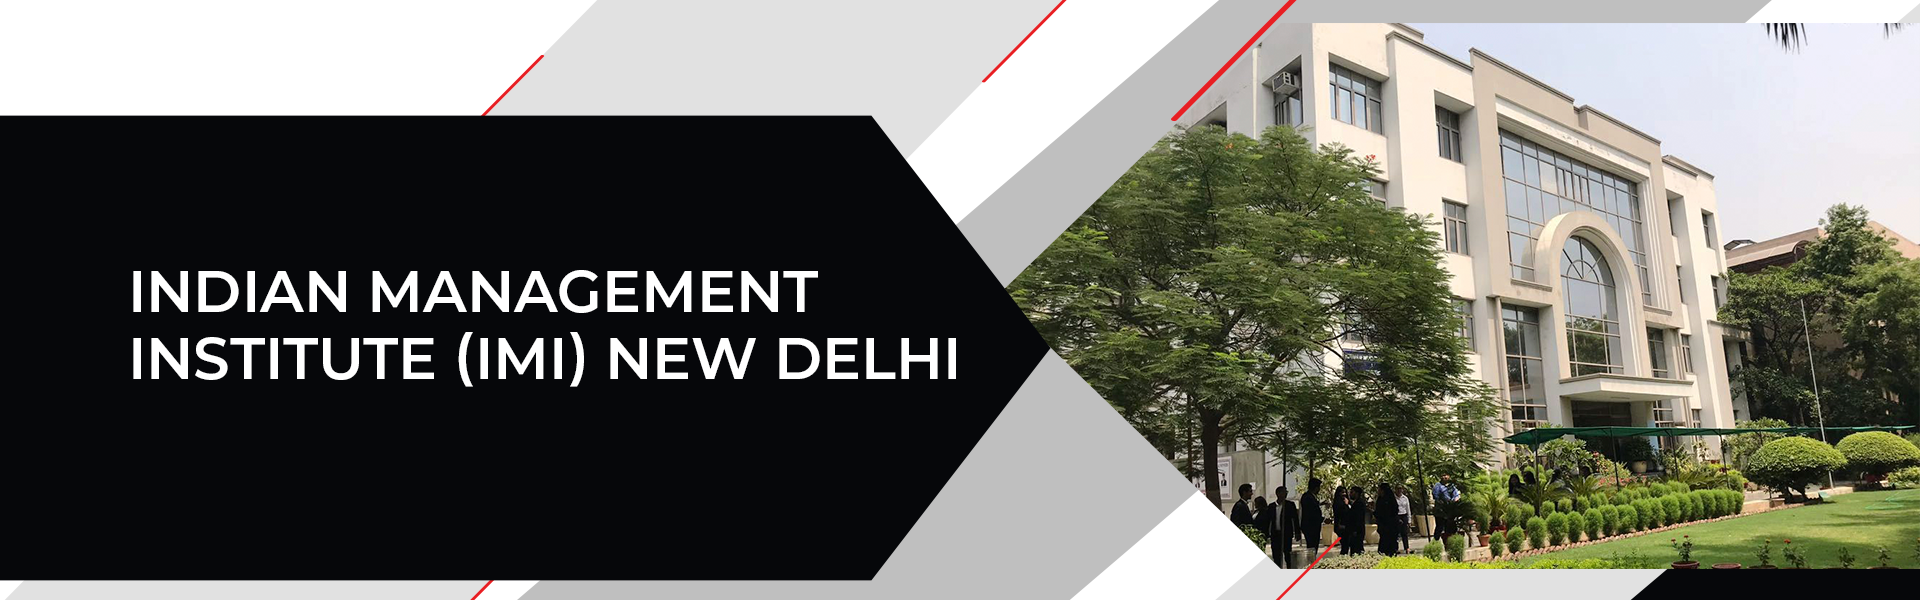 Indian Management Institute (IMI) New Delhi